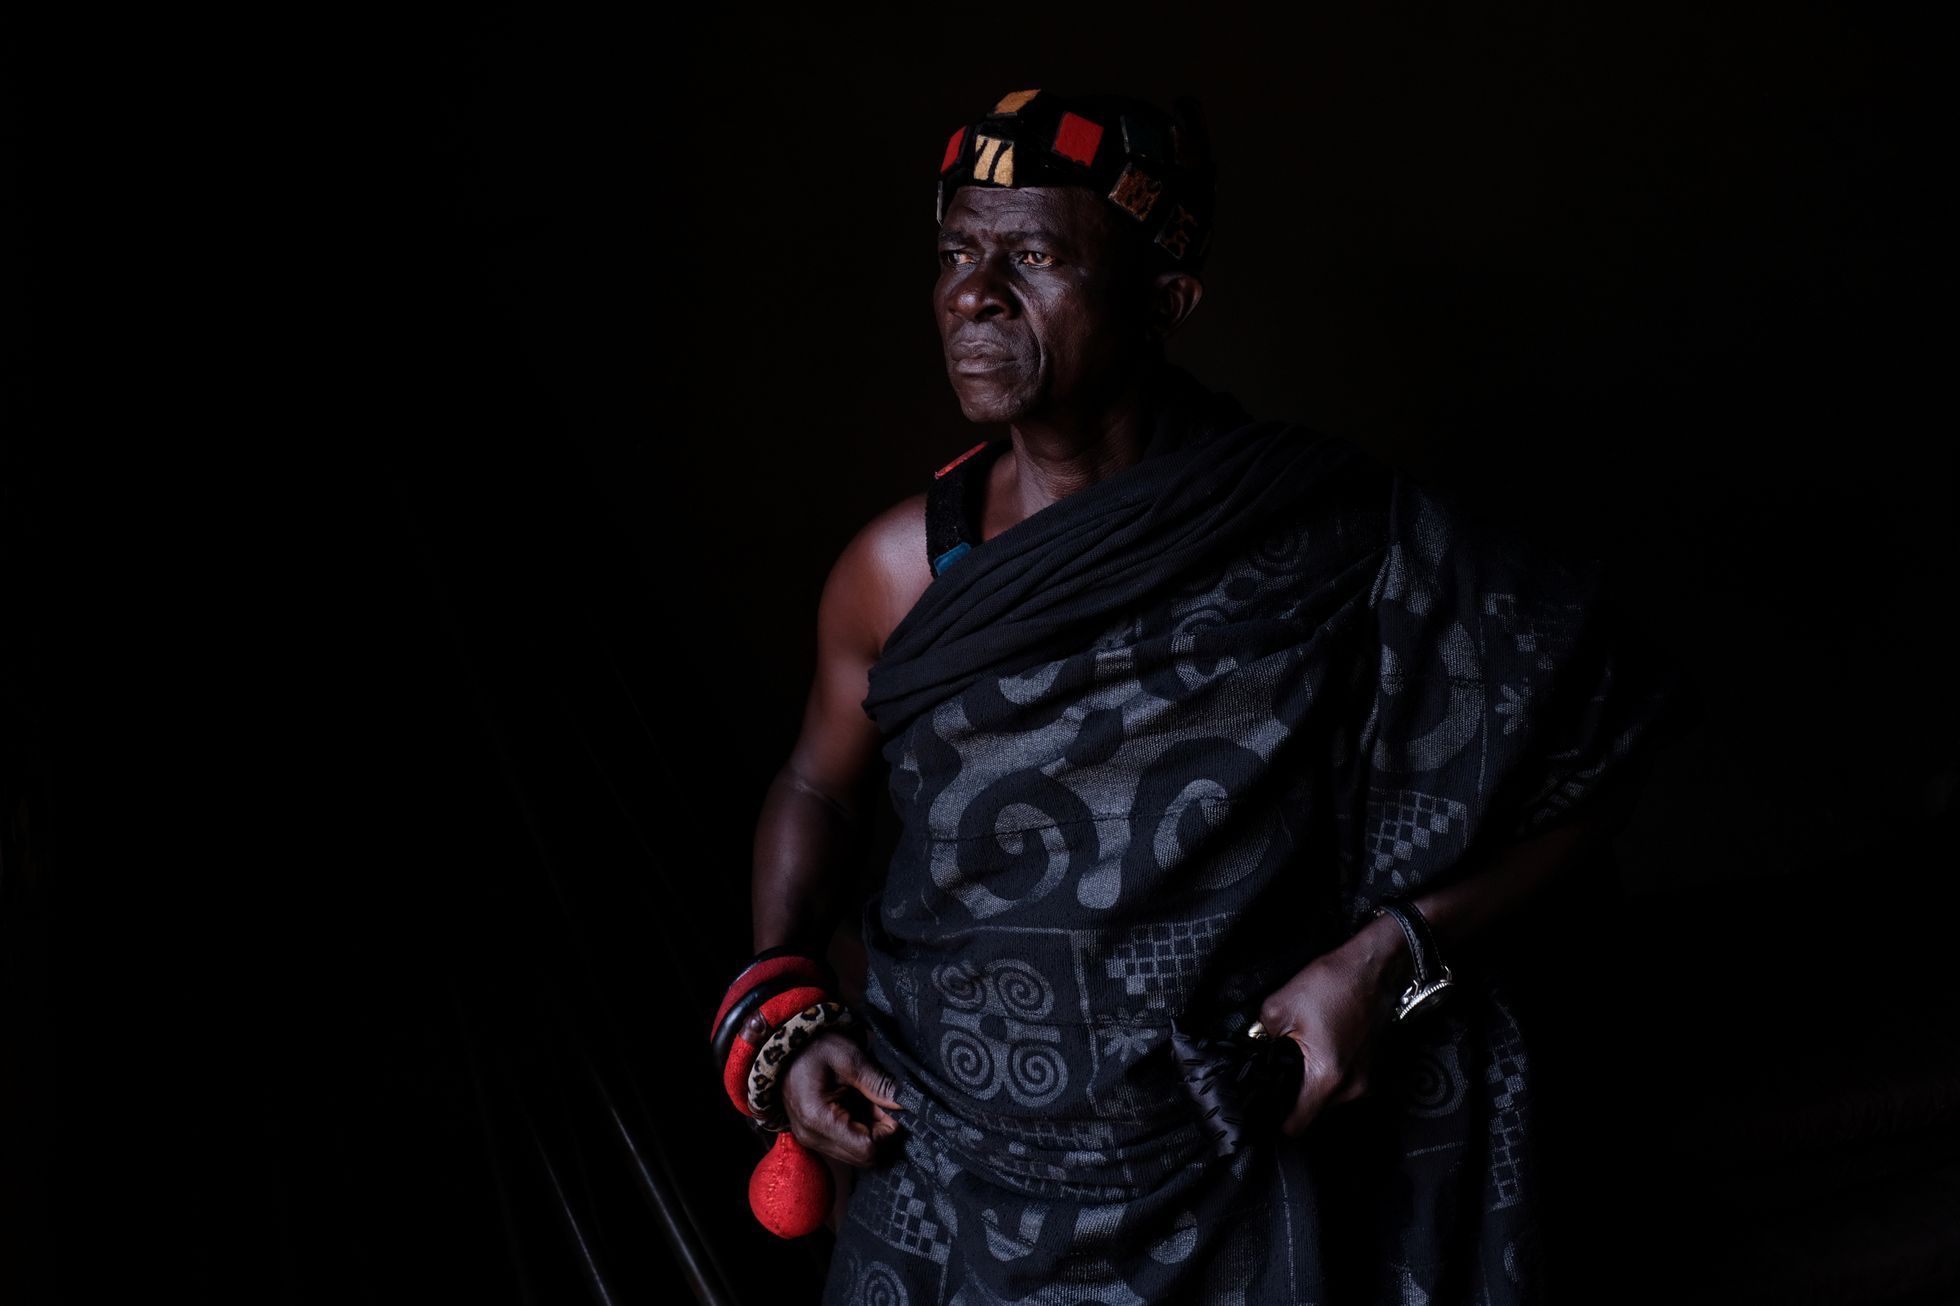 Fotogalerie / Po stopách otrokářů v africké Ghaně, kteří odsud začali před 400 lety vyvážet otroky do Ameriky / Reuters